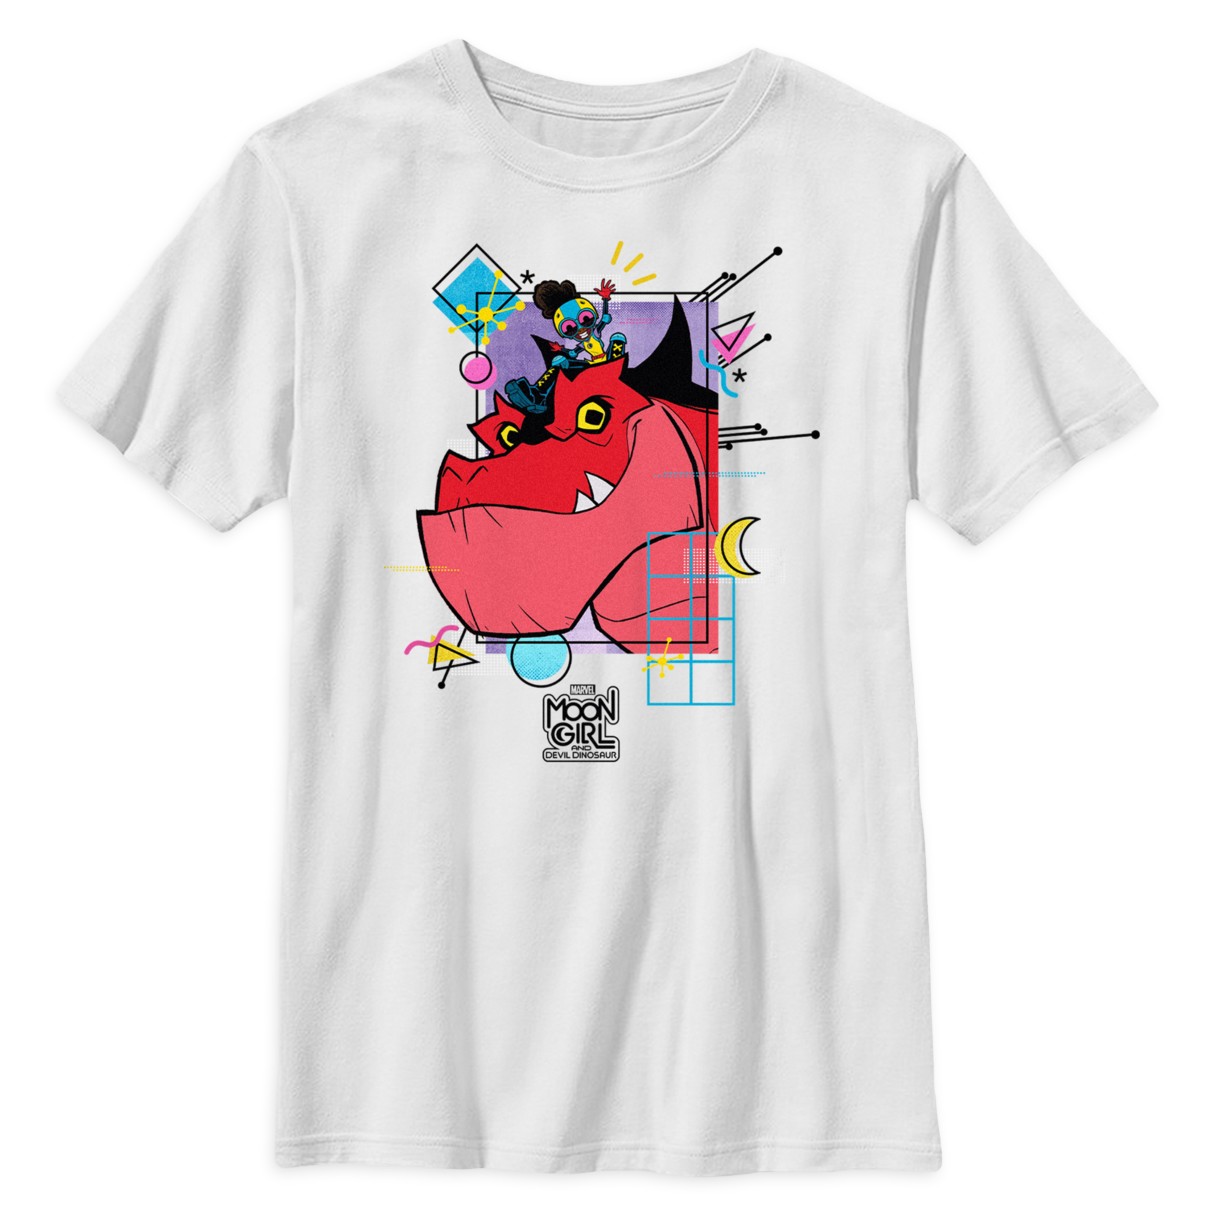 Moon Girl and Devil Dinosaur T-Shirt for Kids